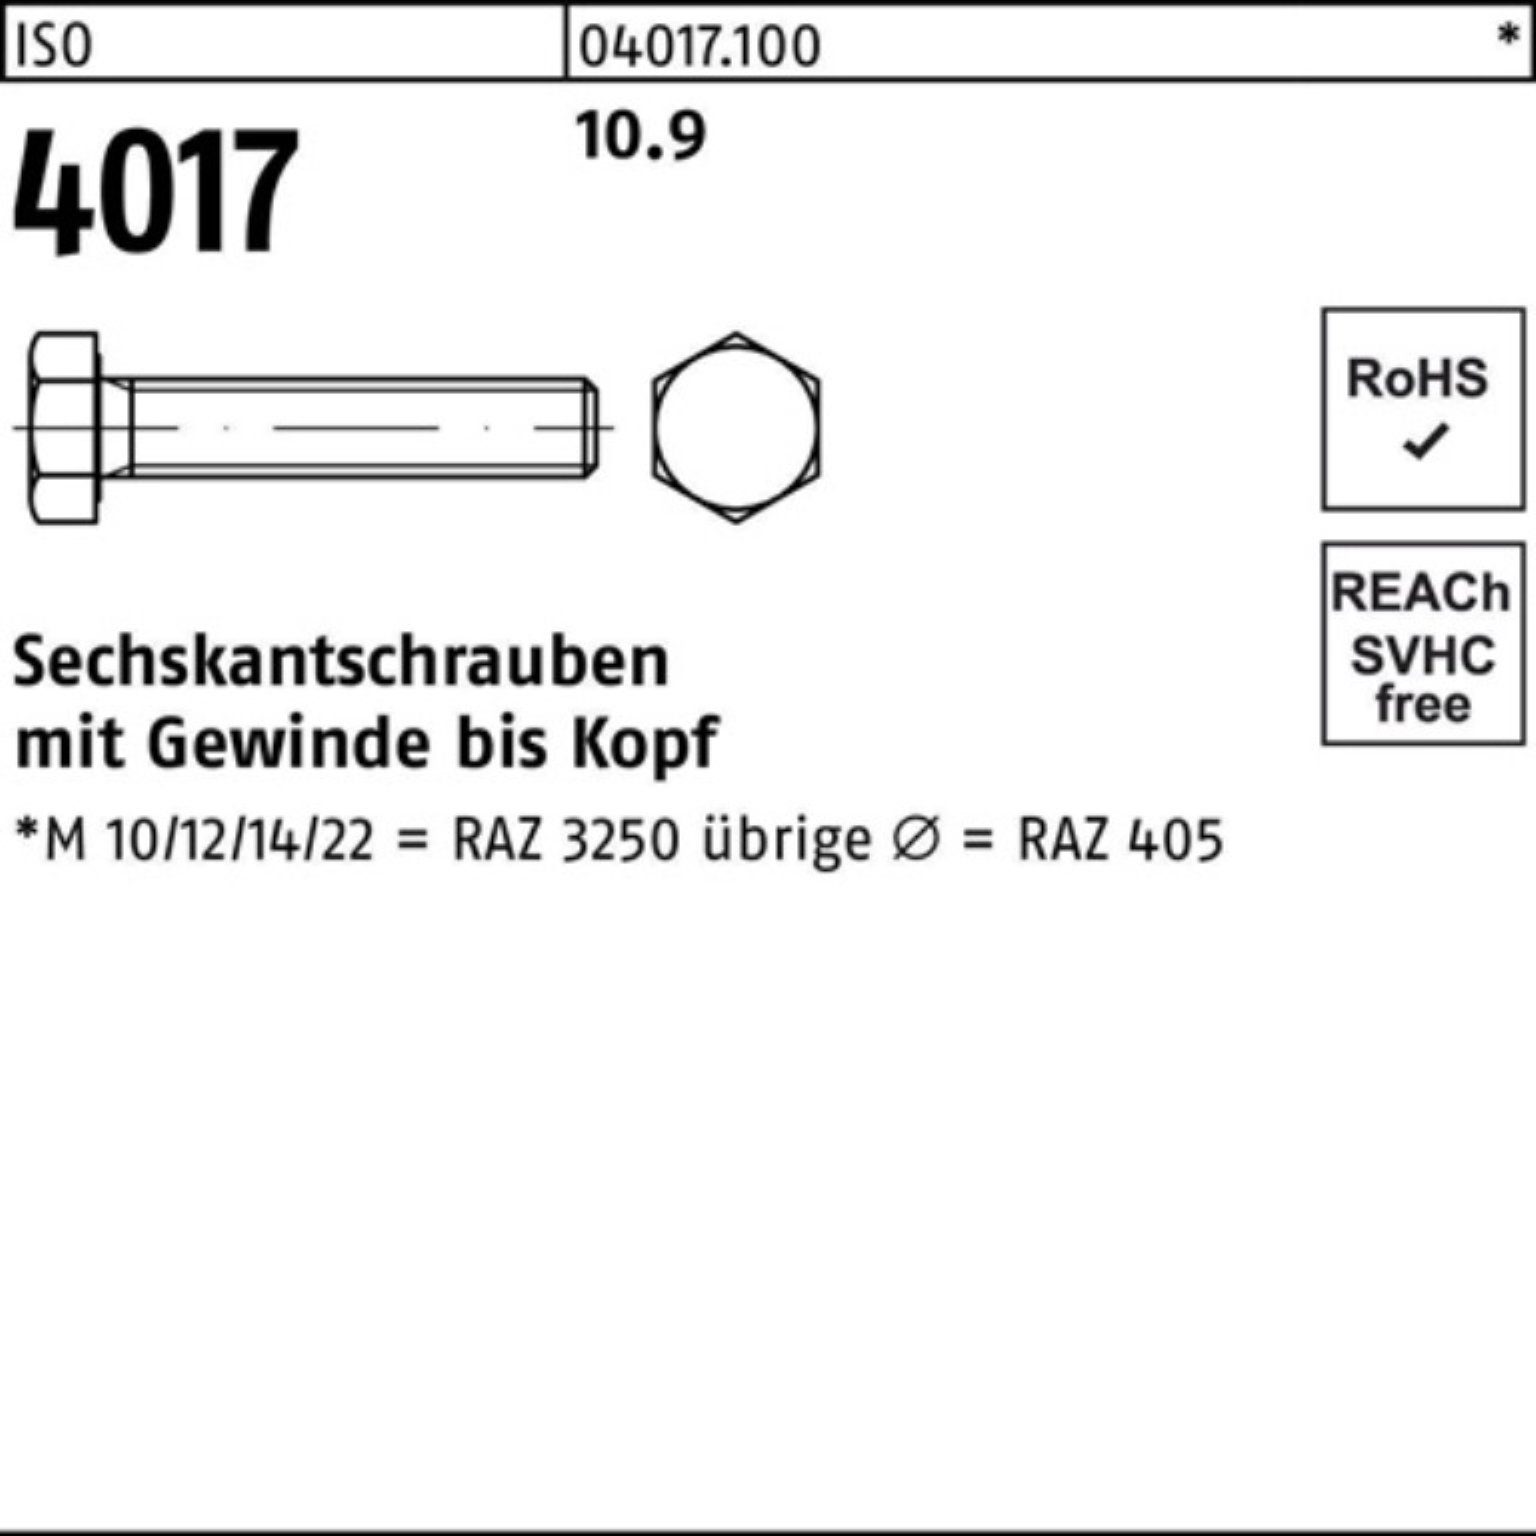 ISO Stück 200 18 Bufab Pack VG 4 Sechskantschraube 200er 4017 10.9 Sechskantschraube ISO M10x